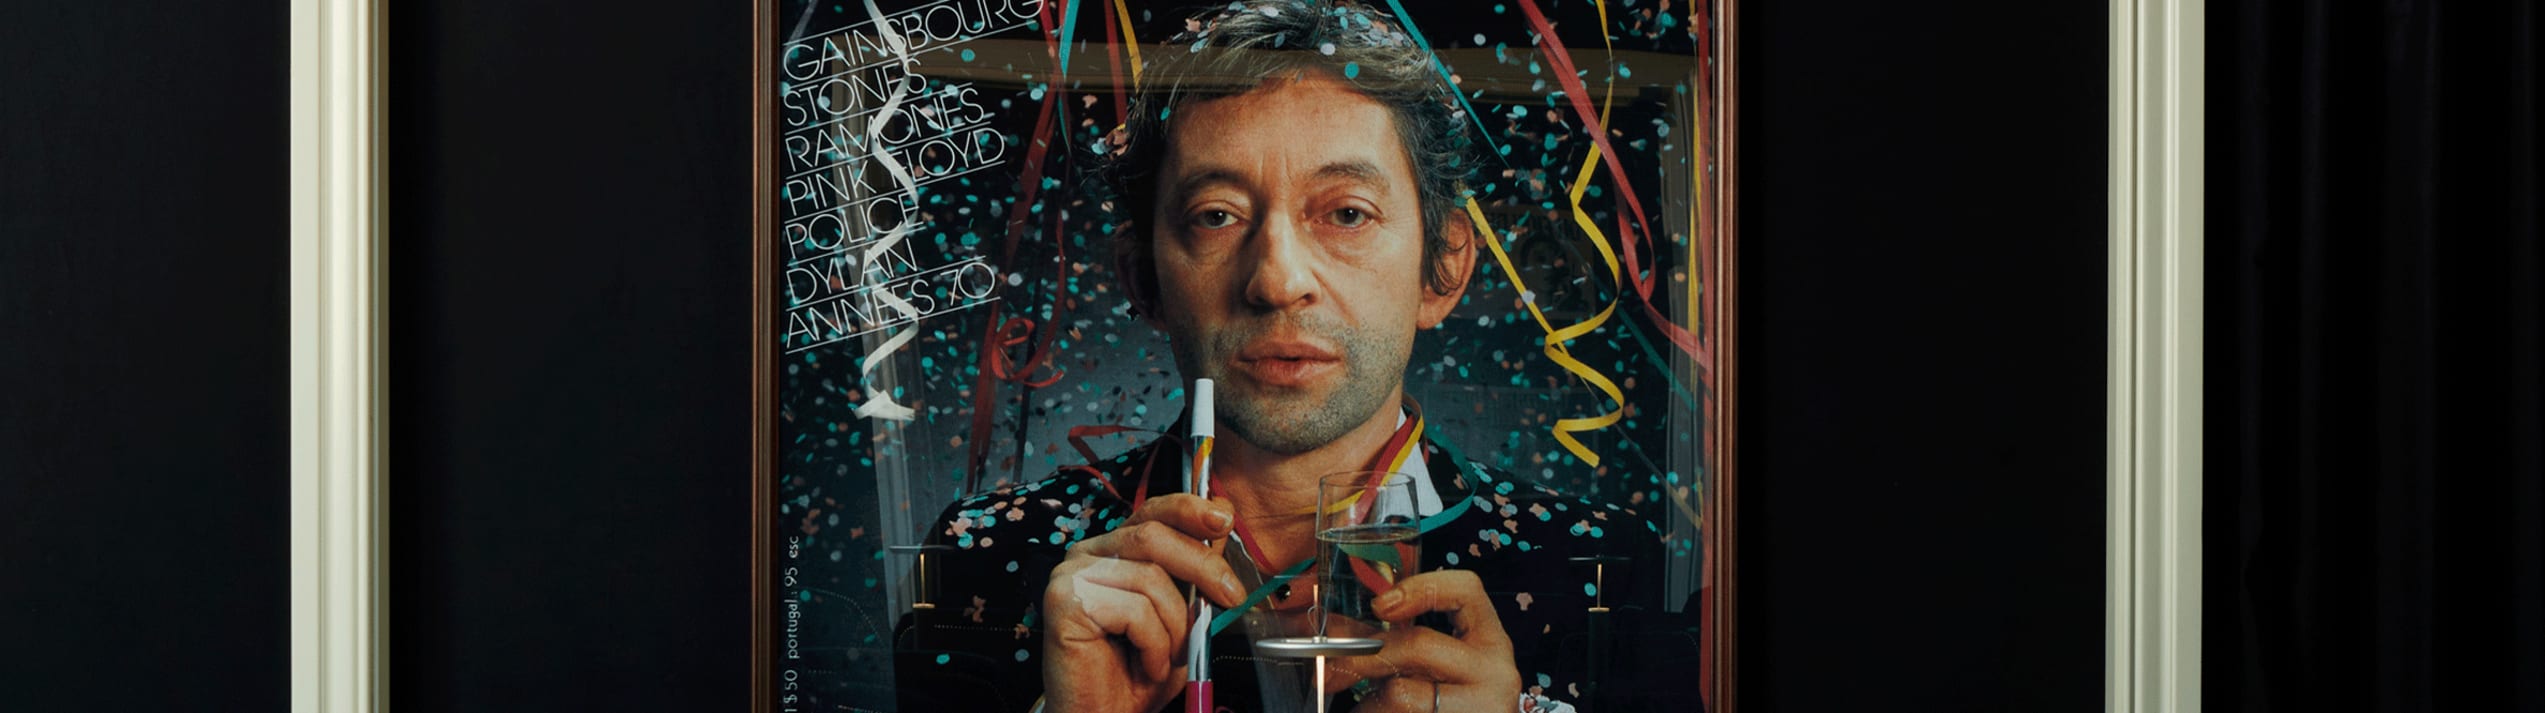 Read more about À la découverte de la maison parisienne de Serge Gainsbourg